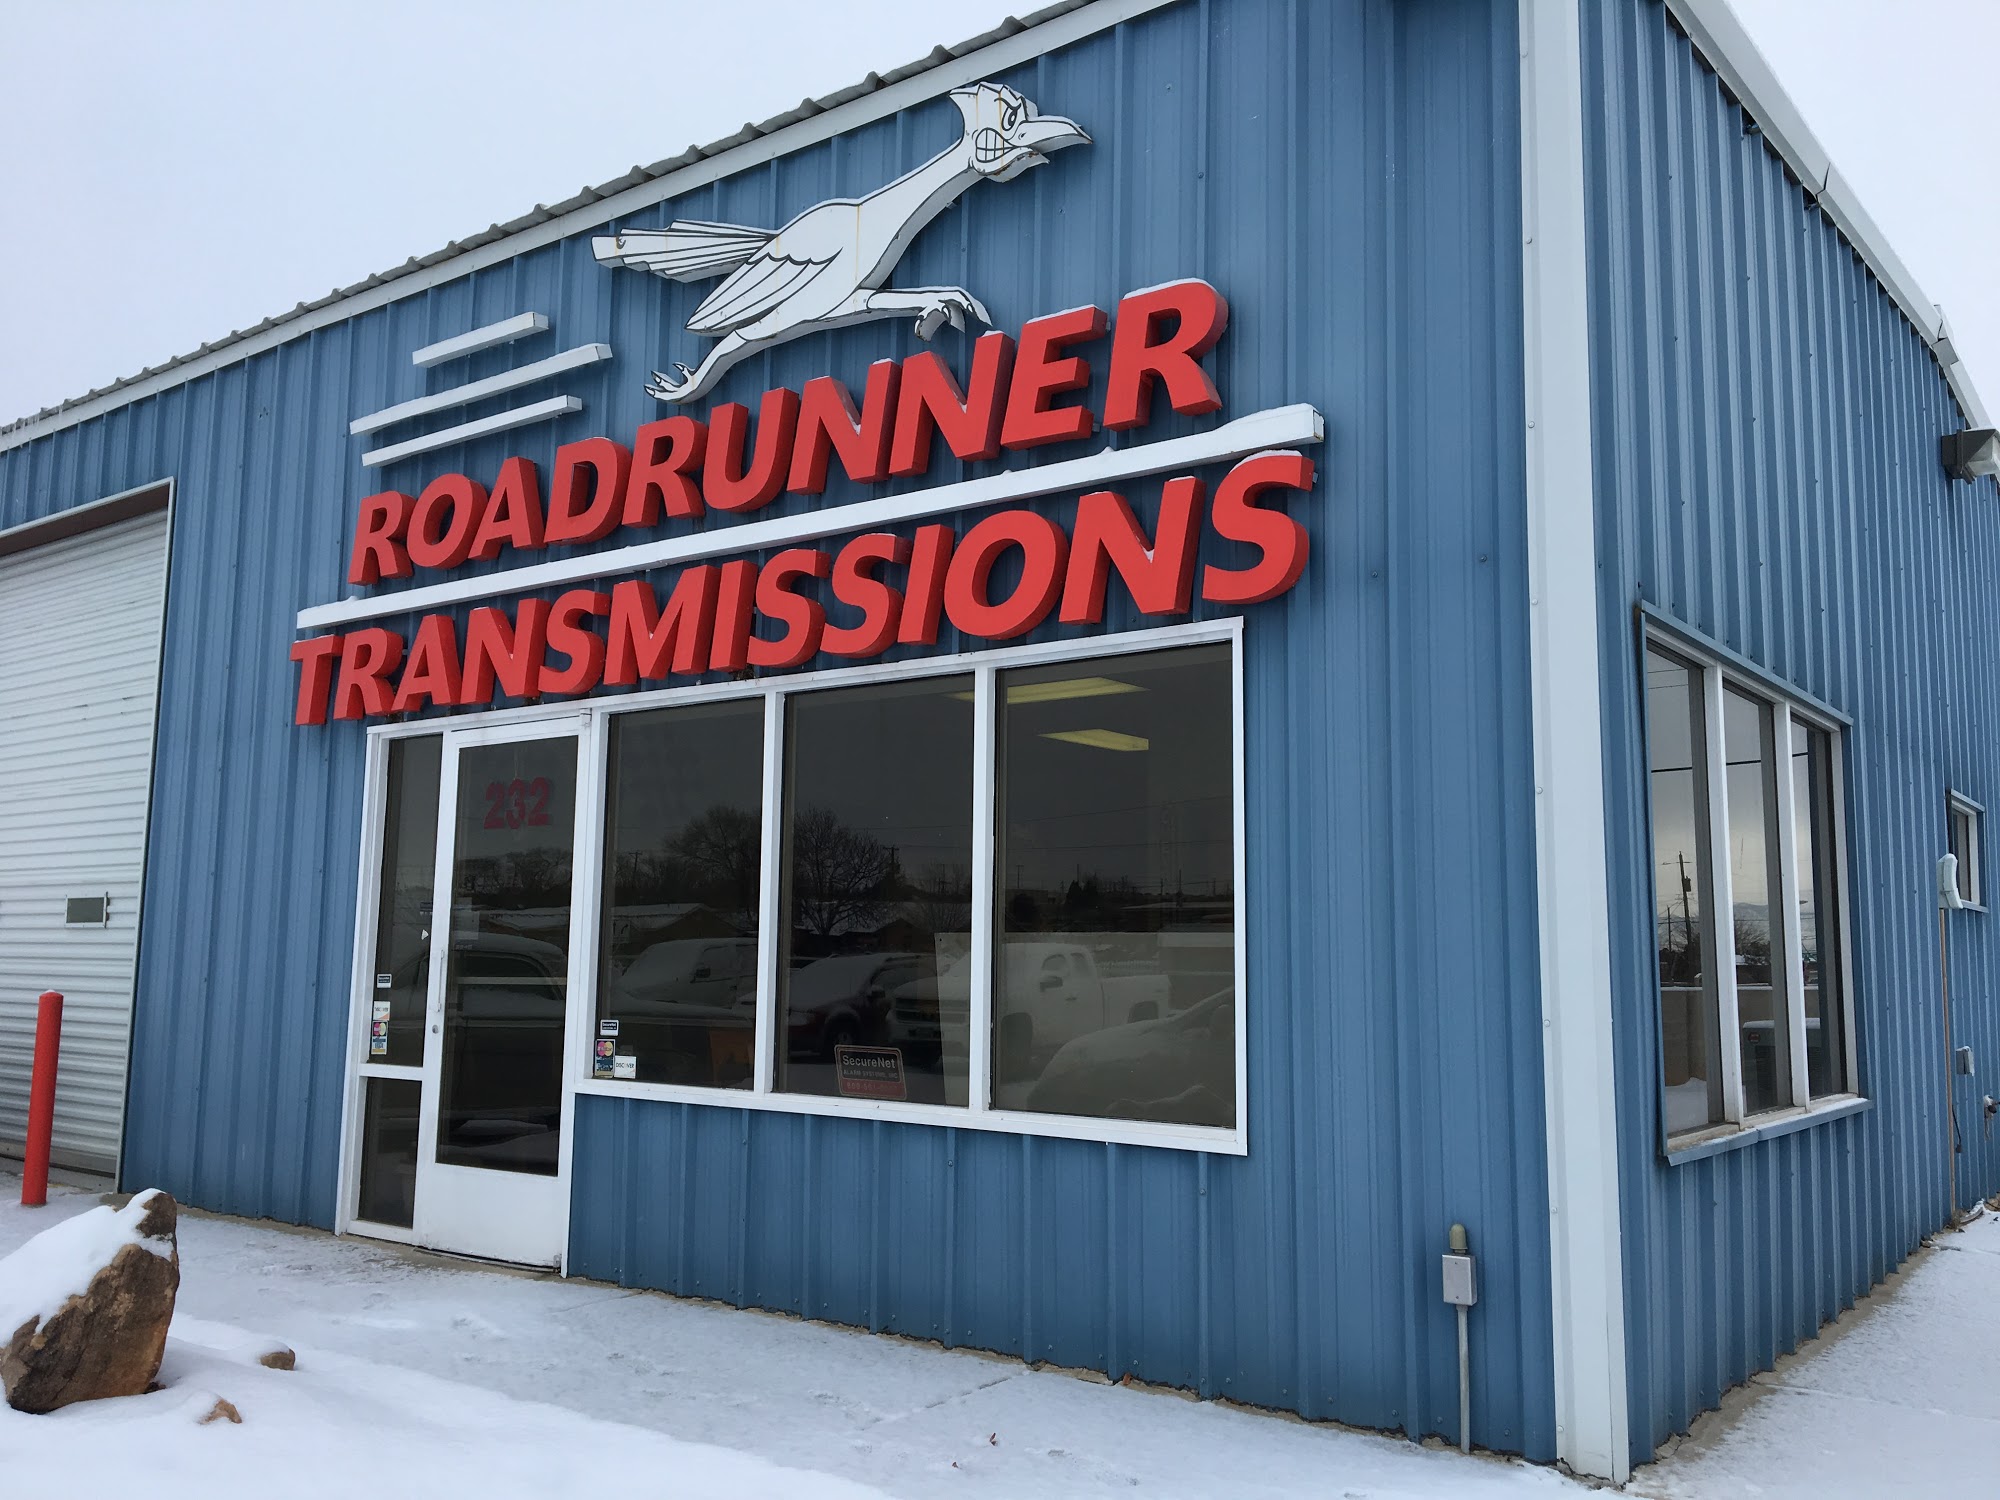 Roadrunner Transmissions